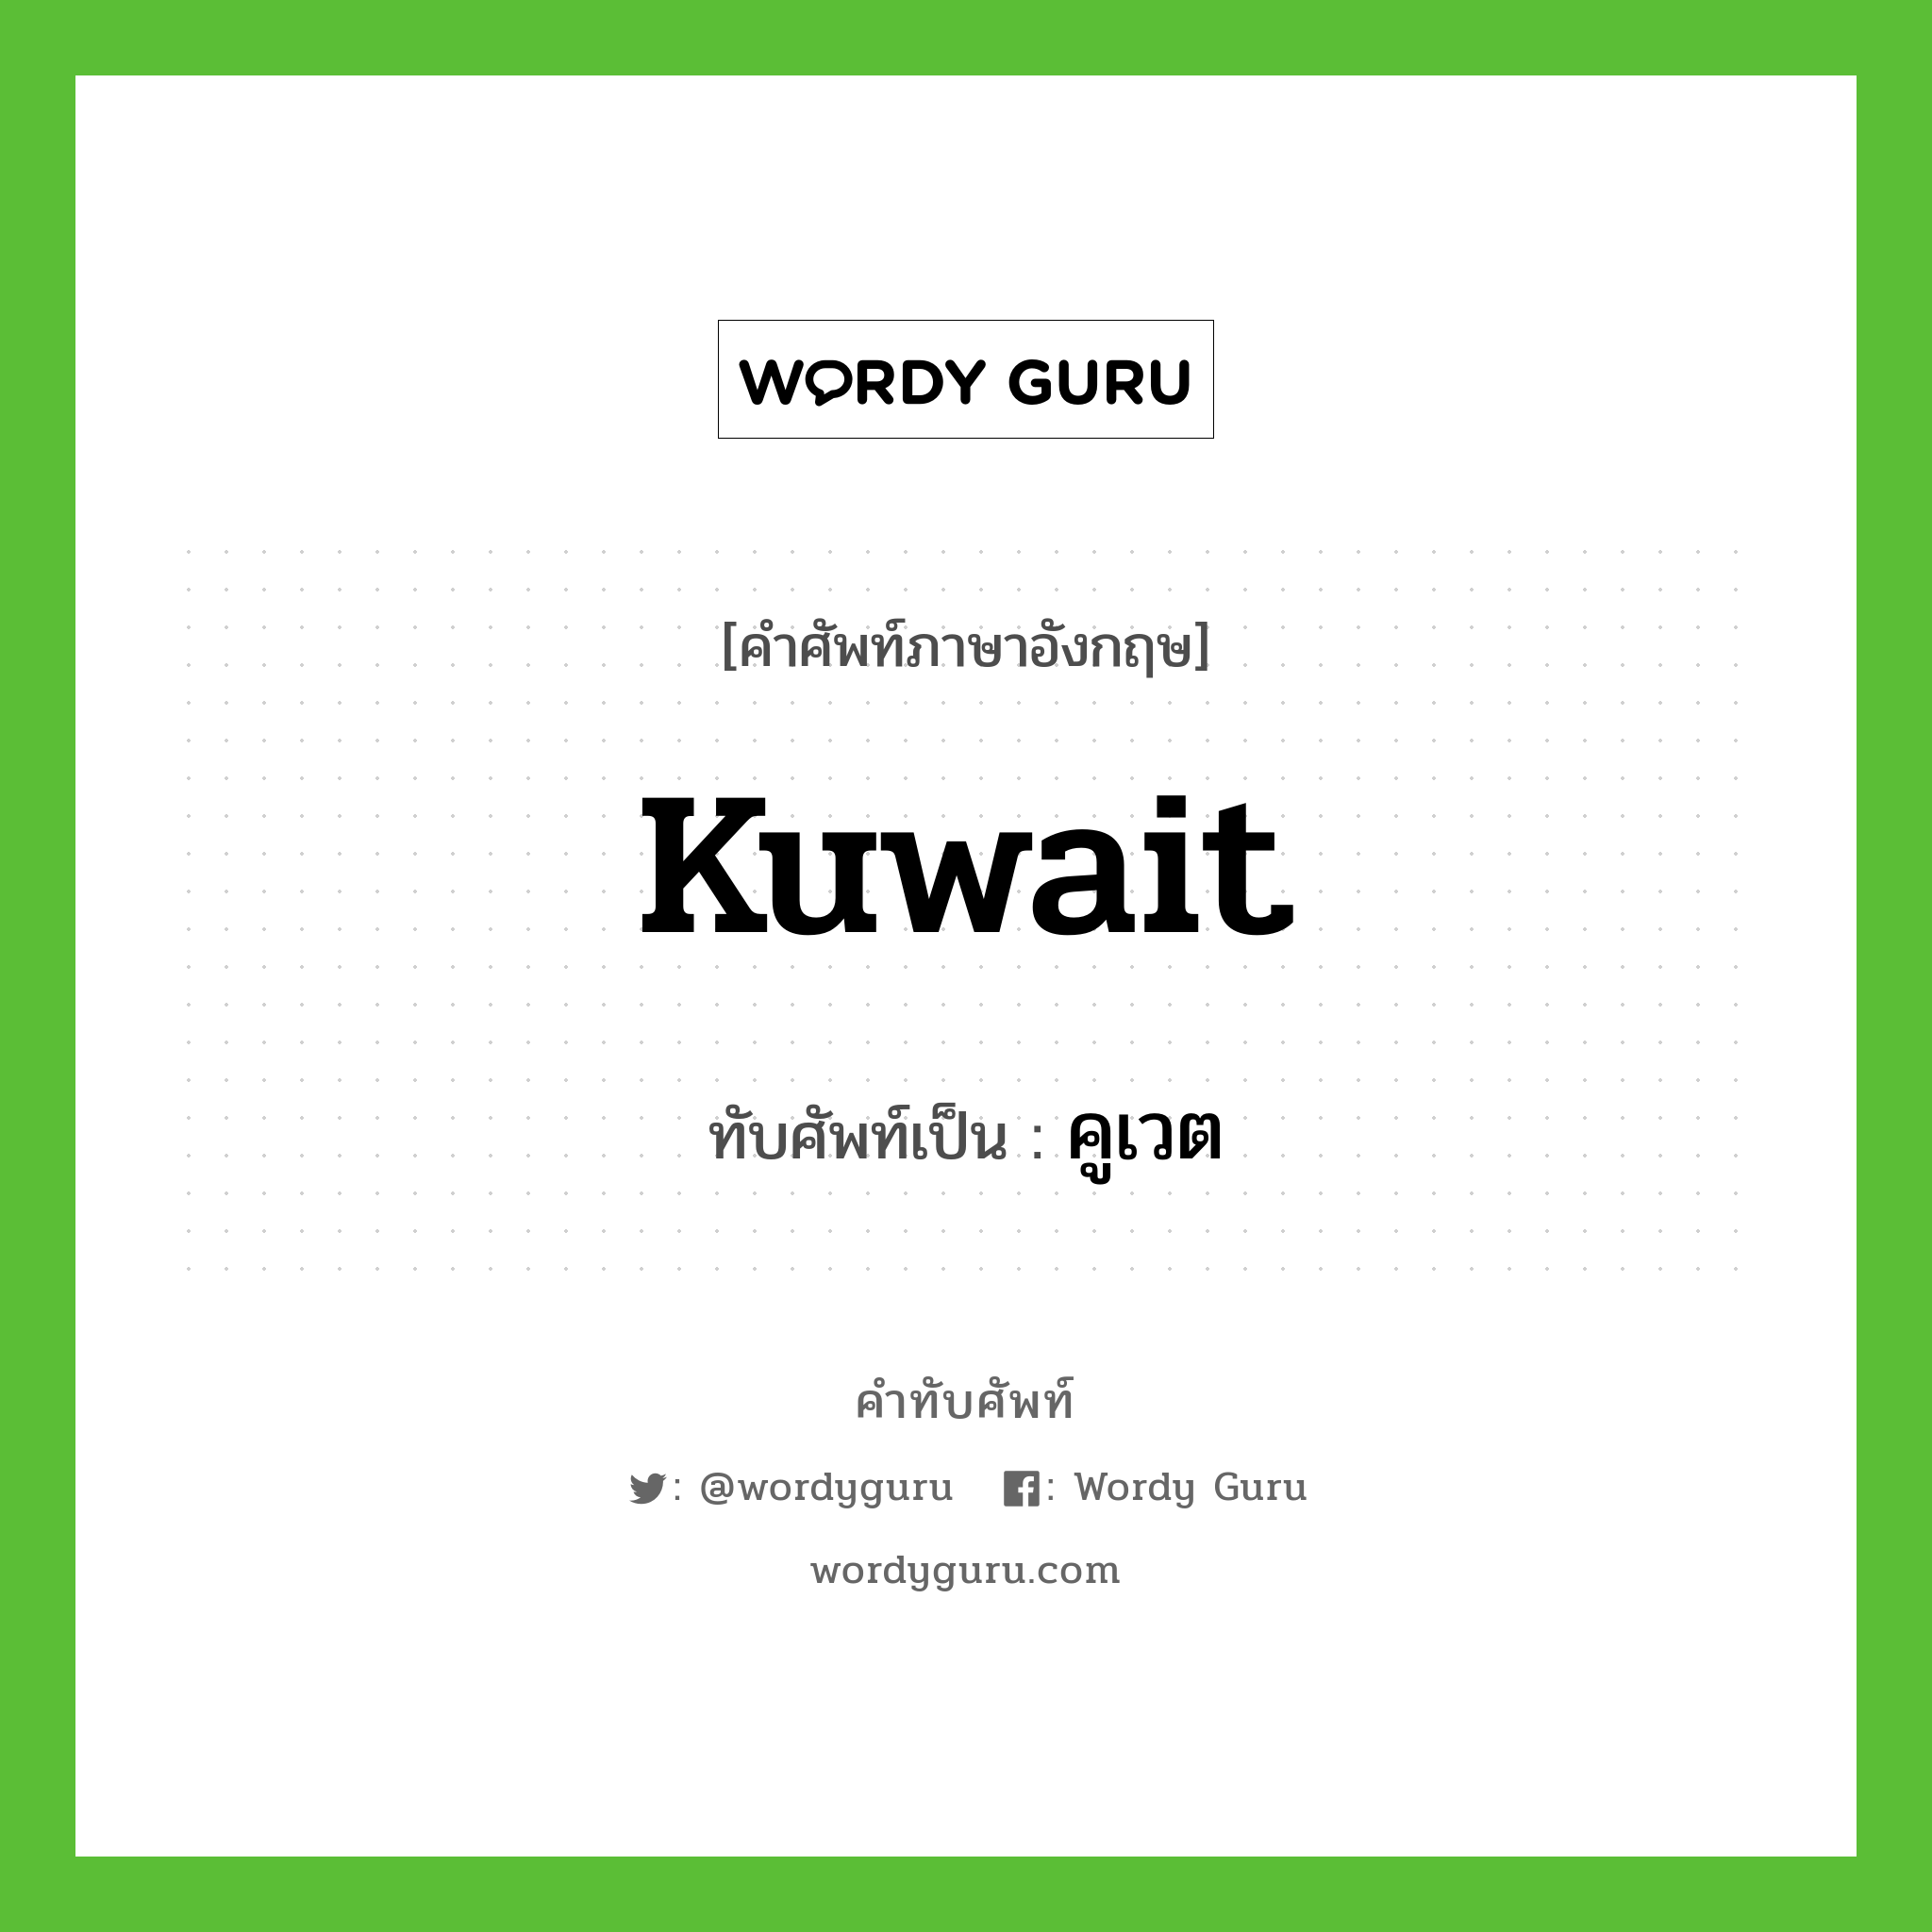 Kuwait เขียนเป็นคำไทยว่าอะไร?, คำศัพท์ภาษาอังกฤษ Kuwait ทับศัพท์เป็น คูเวต